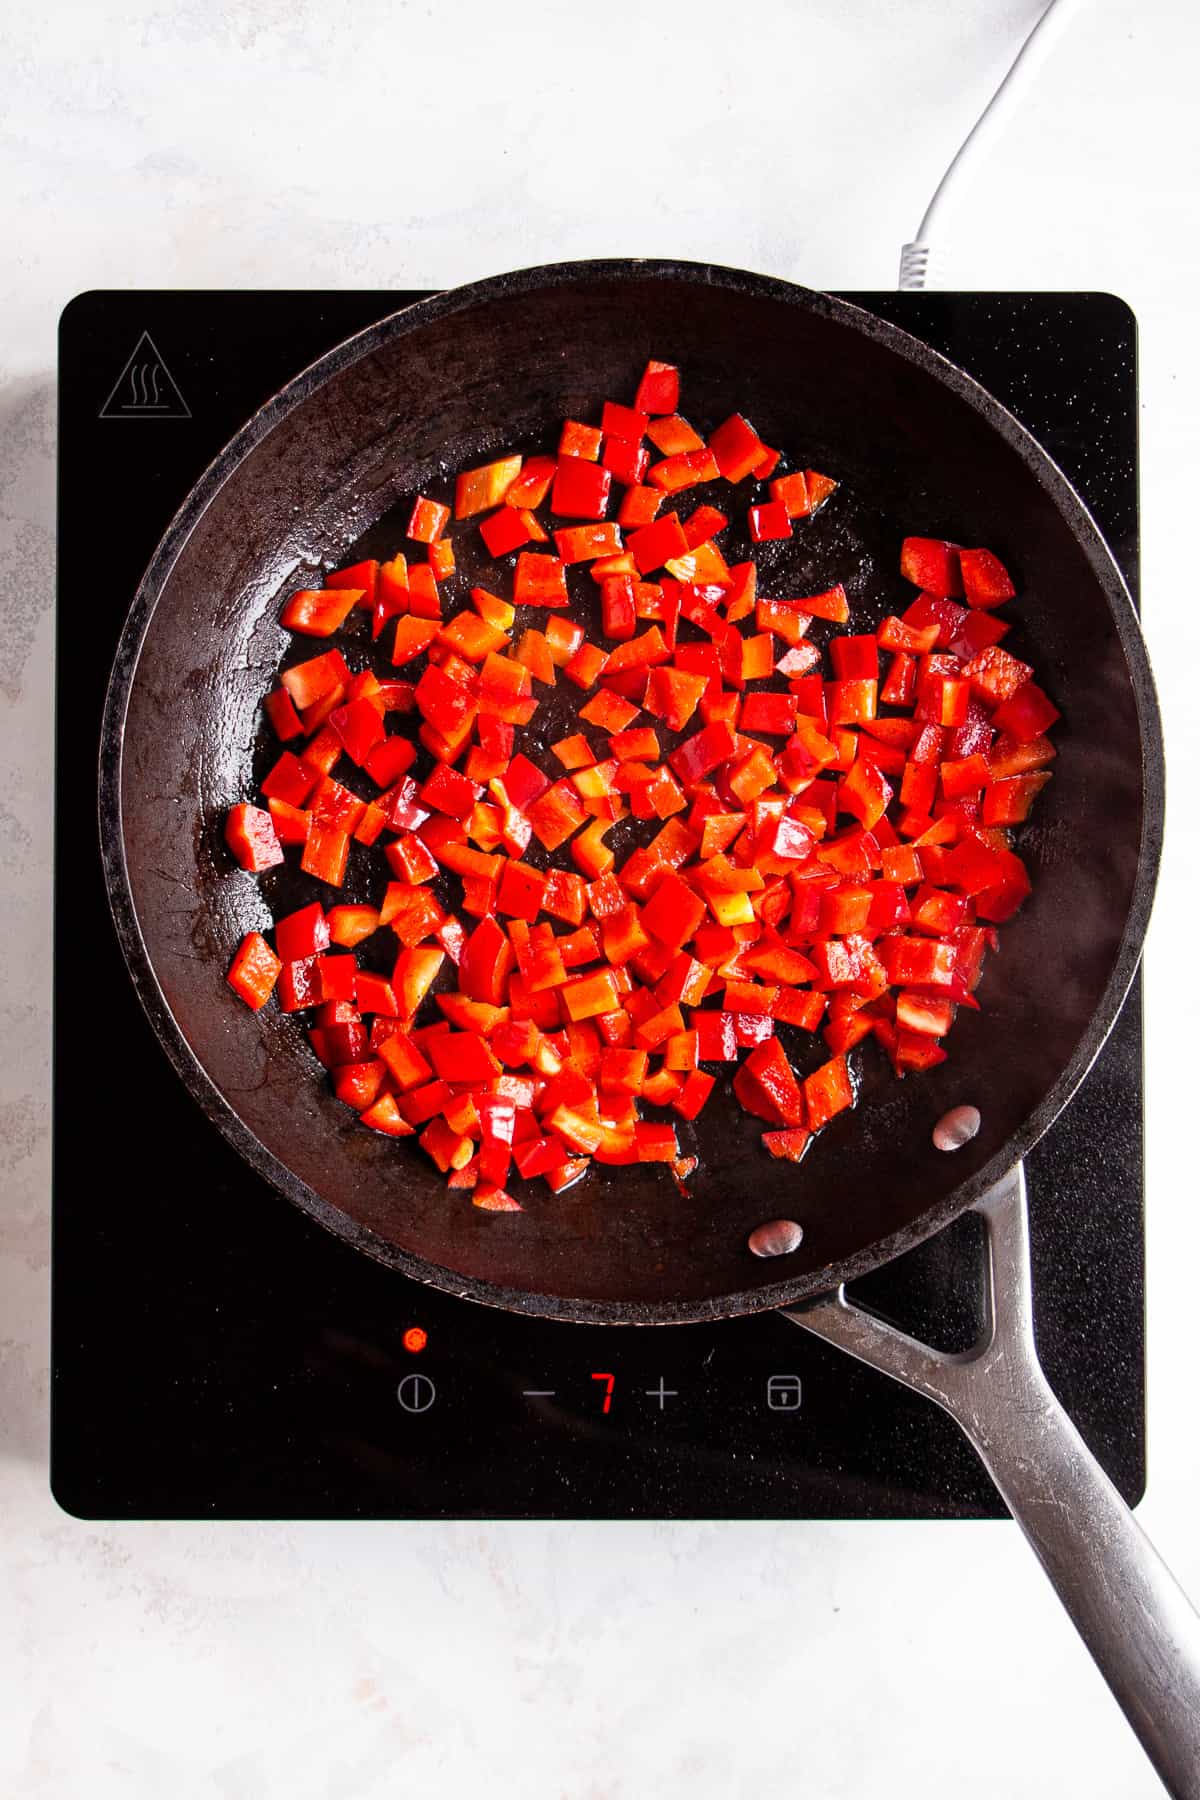 Sautéed red pepper in a black pan.